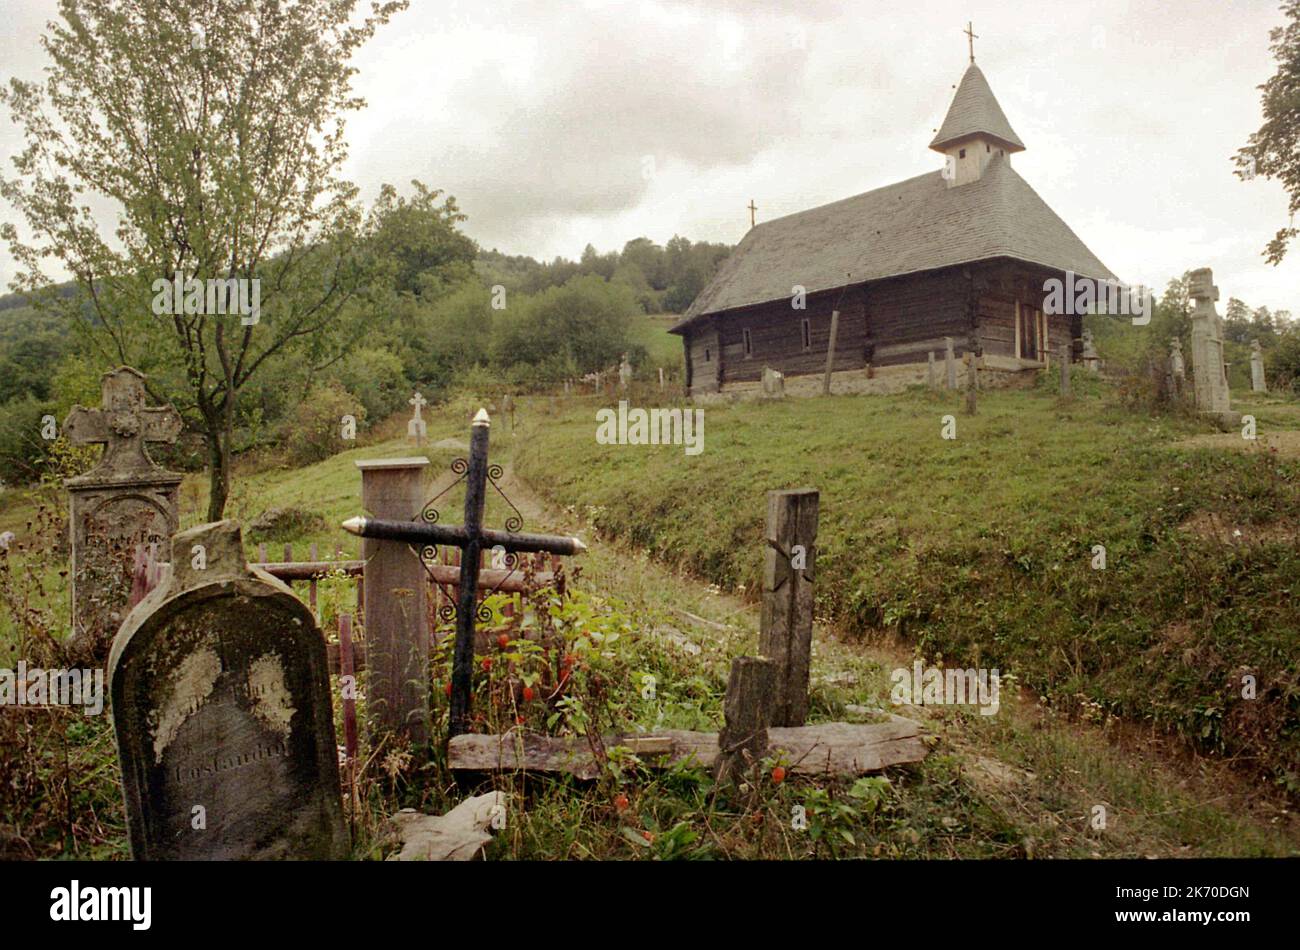 Șinca Nouă, Condado de Brasov, Rumania, 2000. Vista exterior de la iglesia de madera, un monumento histórico del siglo 18th. Foto de stock